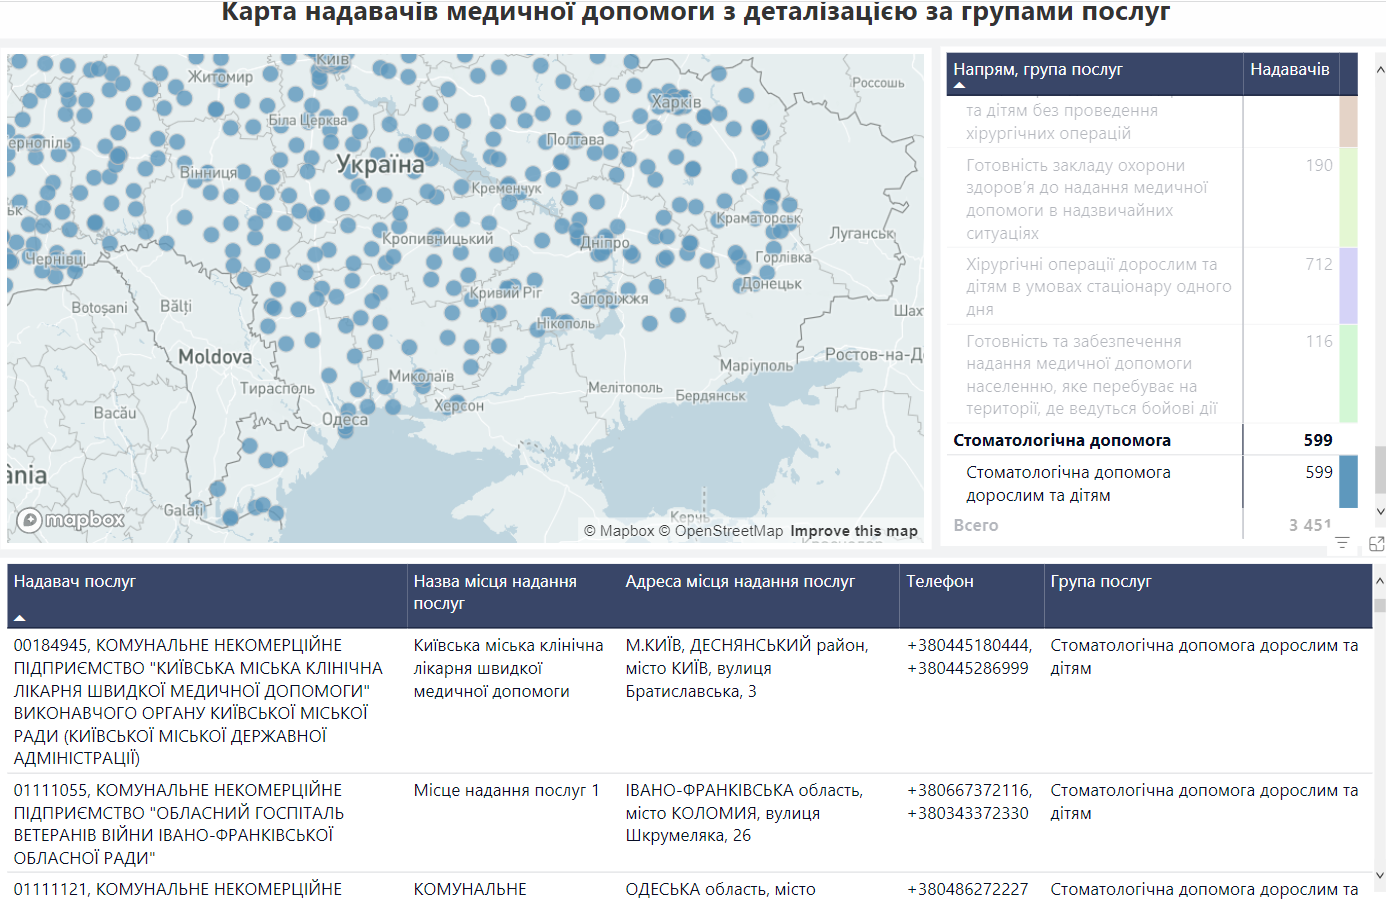 Майже 600 клінік: де саме українці можуть отримати безоплатну стоматологічну допомогу